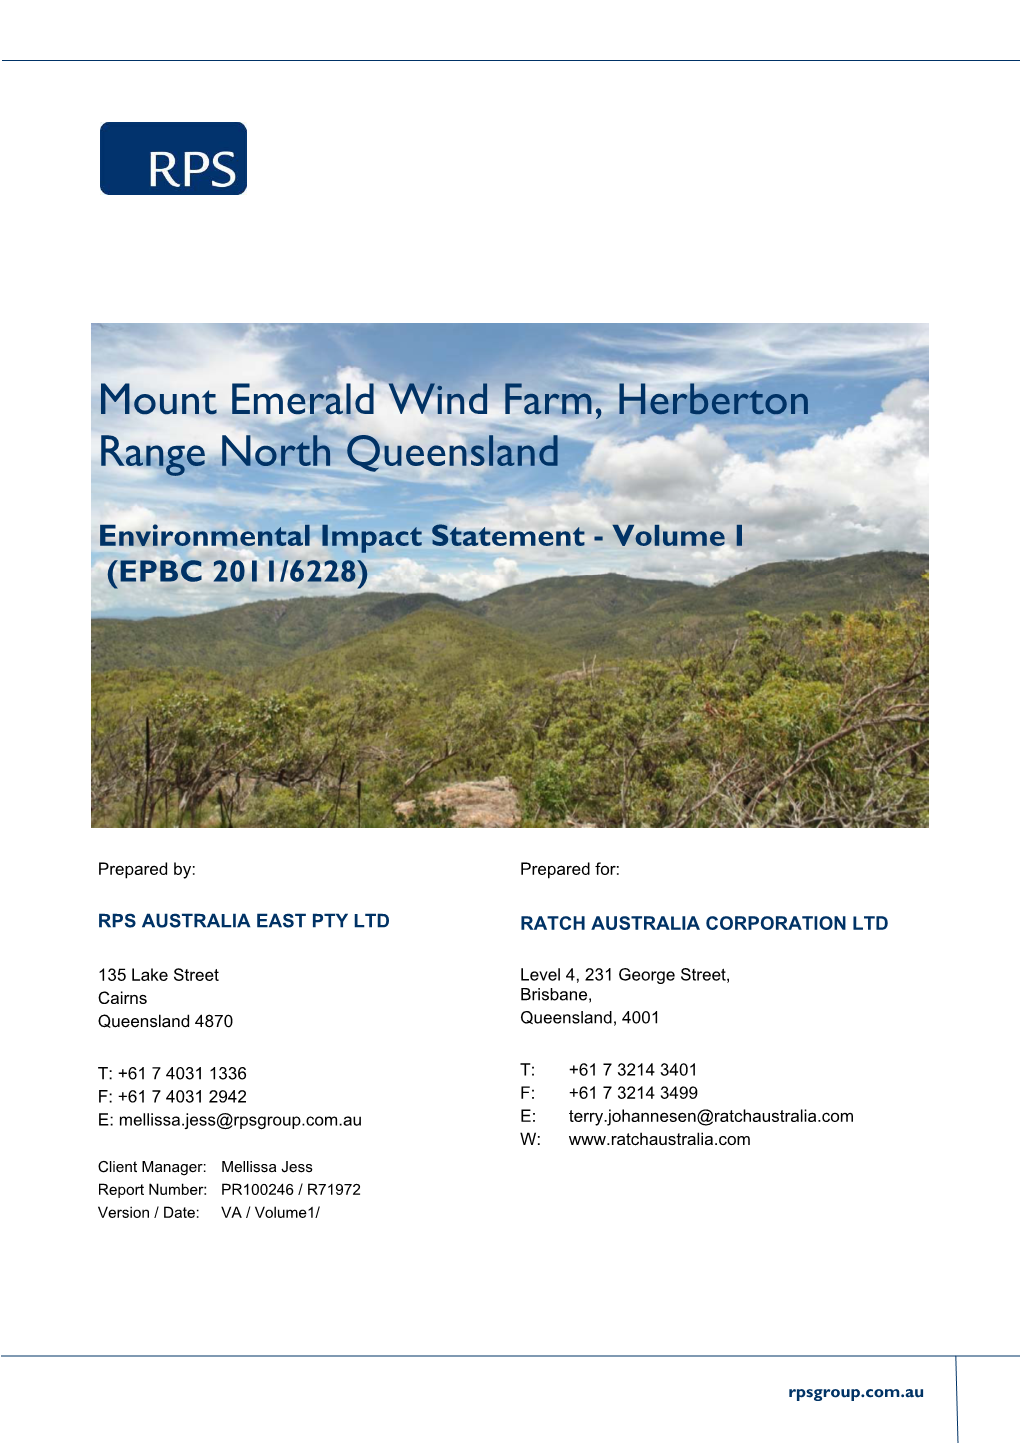 Mount Emerald Wind Farm, Herberton Range North Queensland